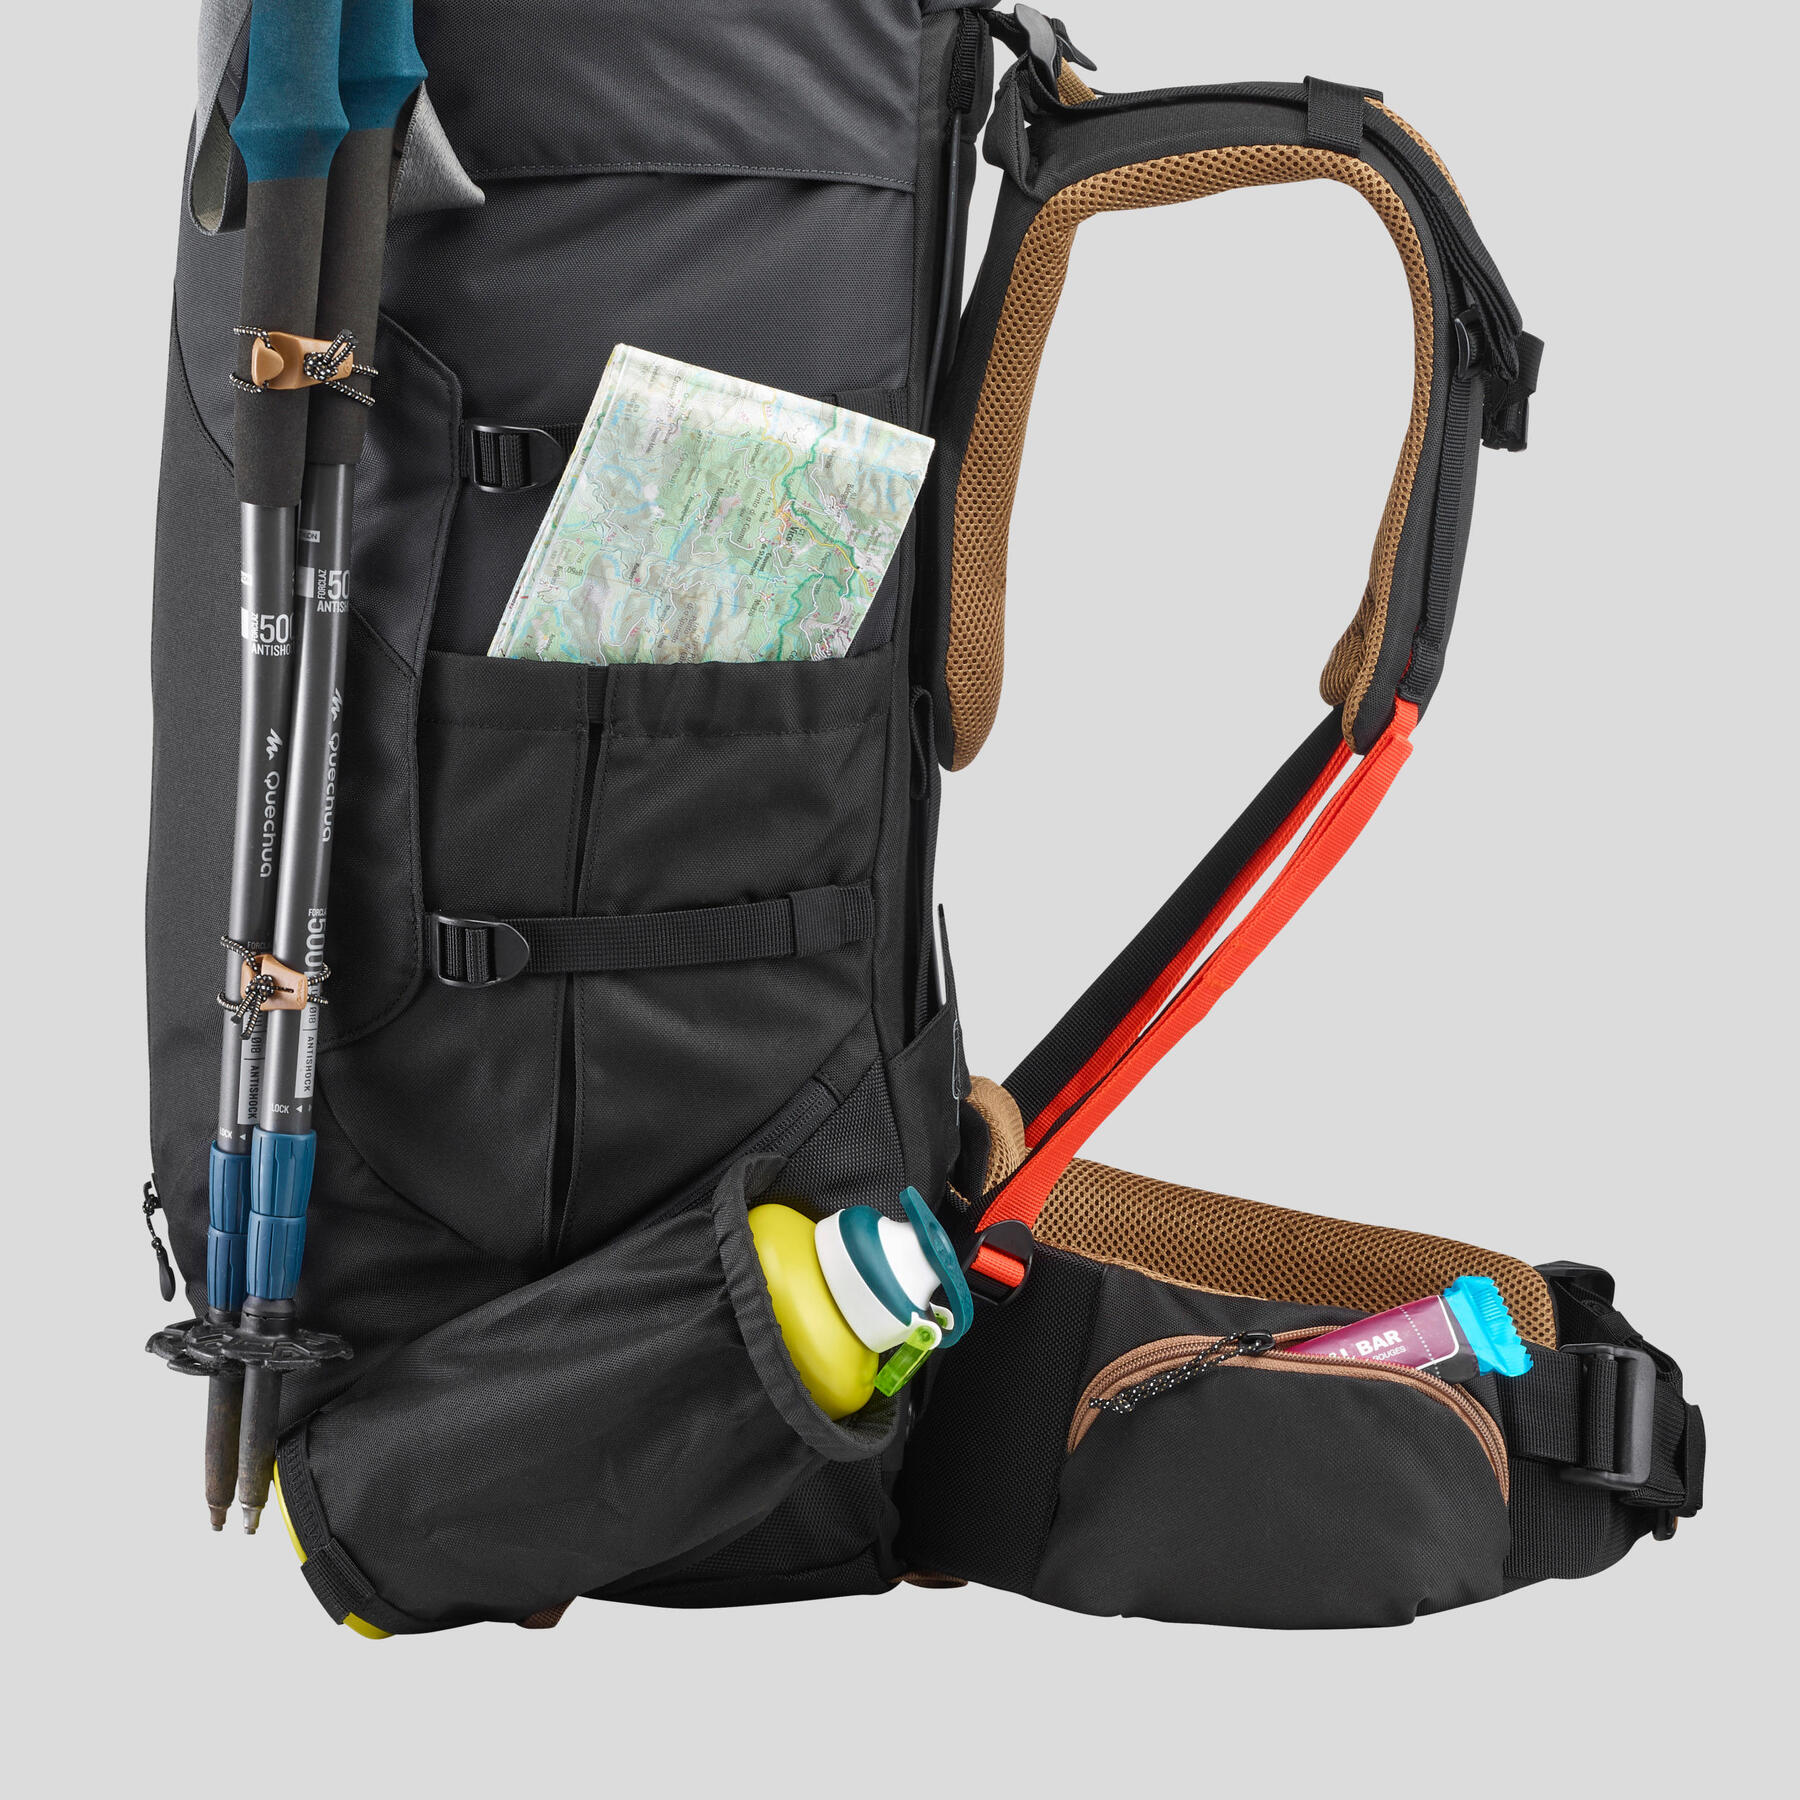 Rucksack seitlich fotografiert und mit Laufstöcken, Trinkflasche und Karte ausgerüstet.